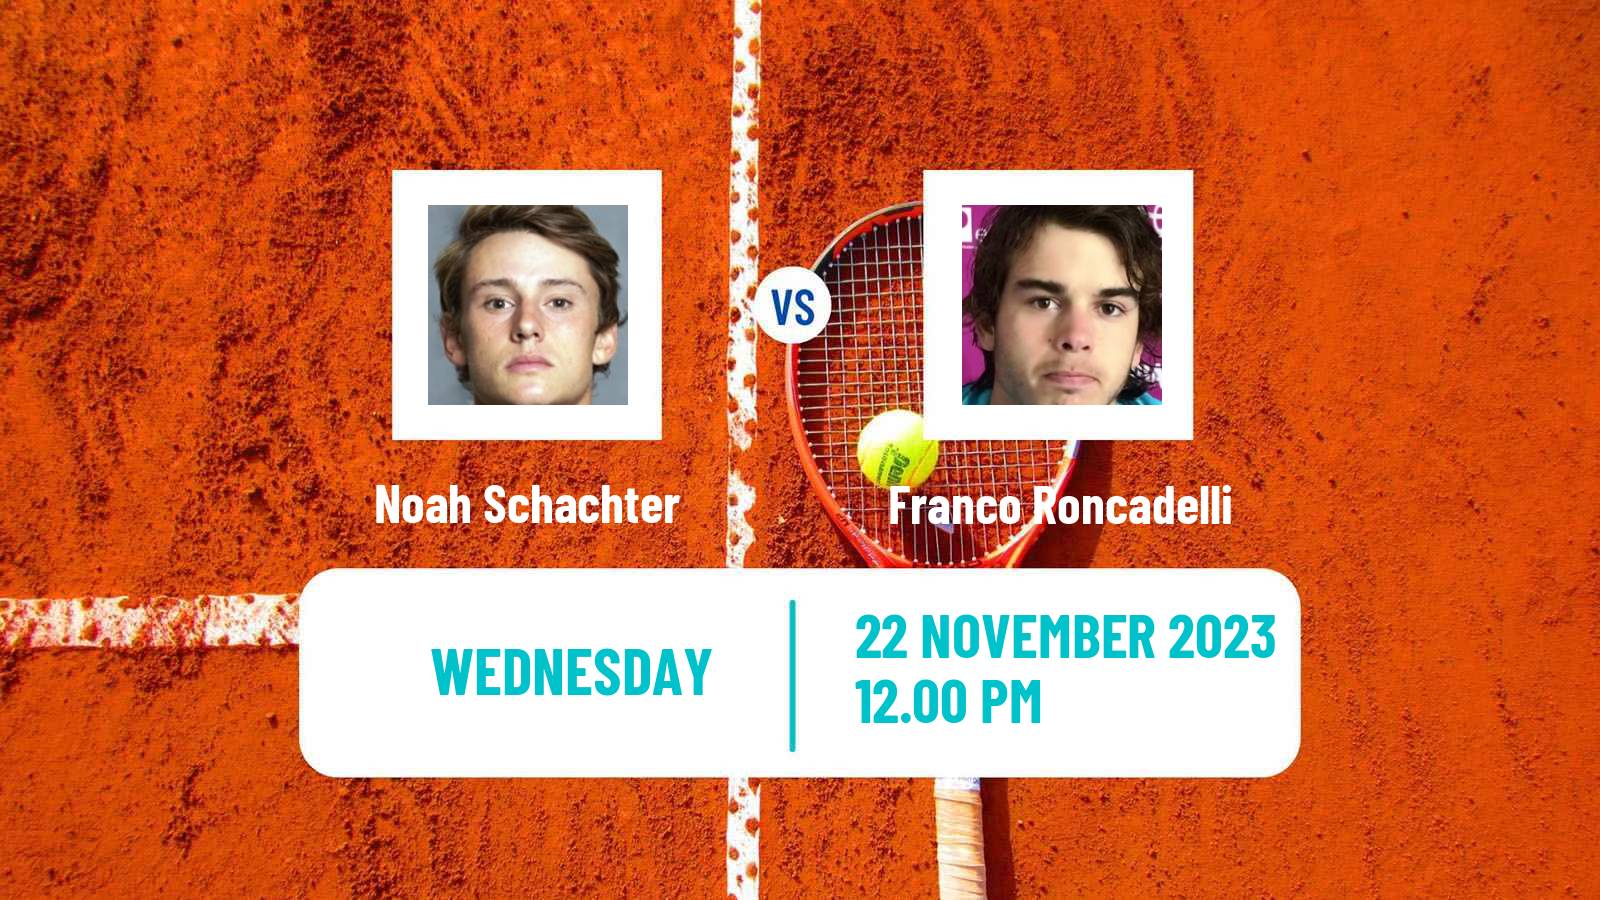 Tennis ITF M15 Santa Cruz Men Noah Schachter - Franco Roncadelli